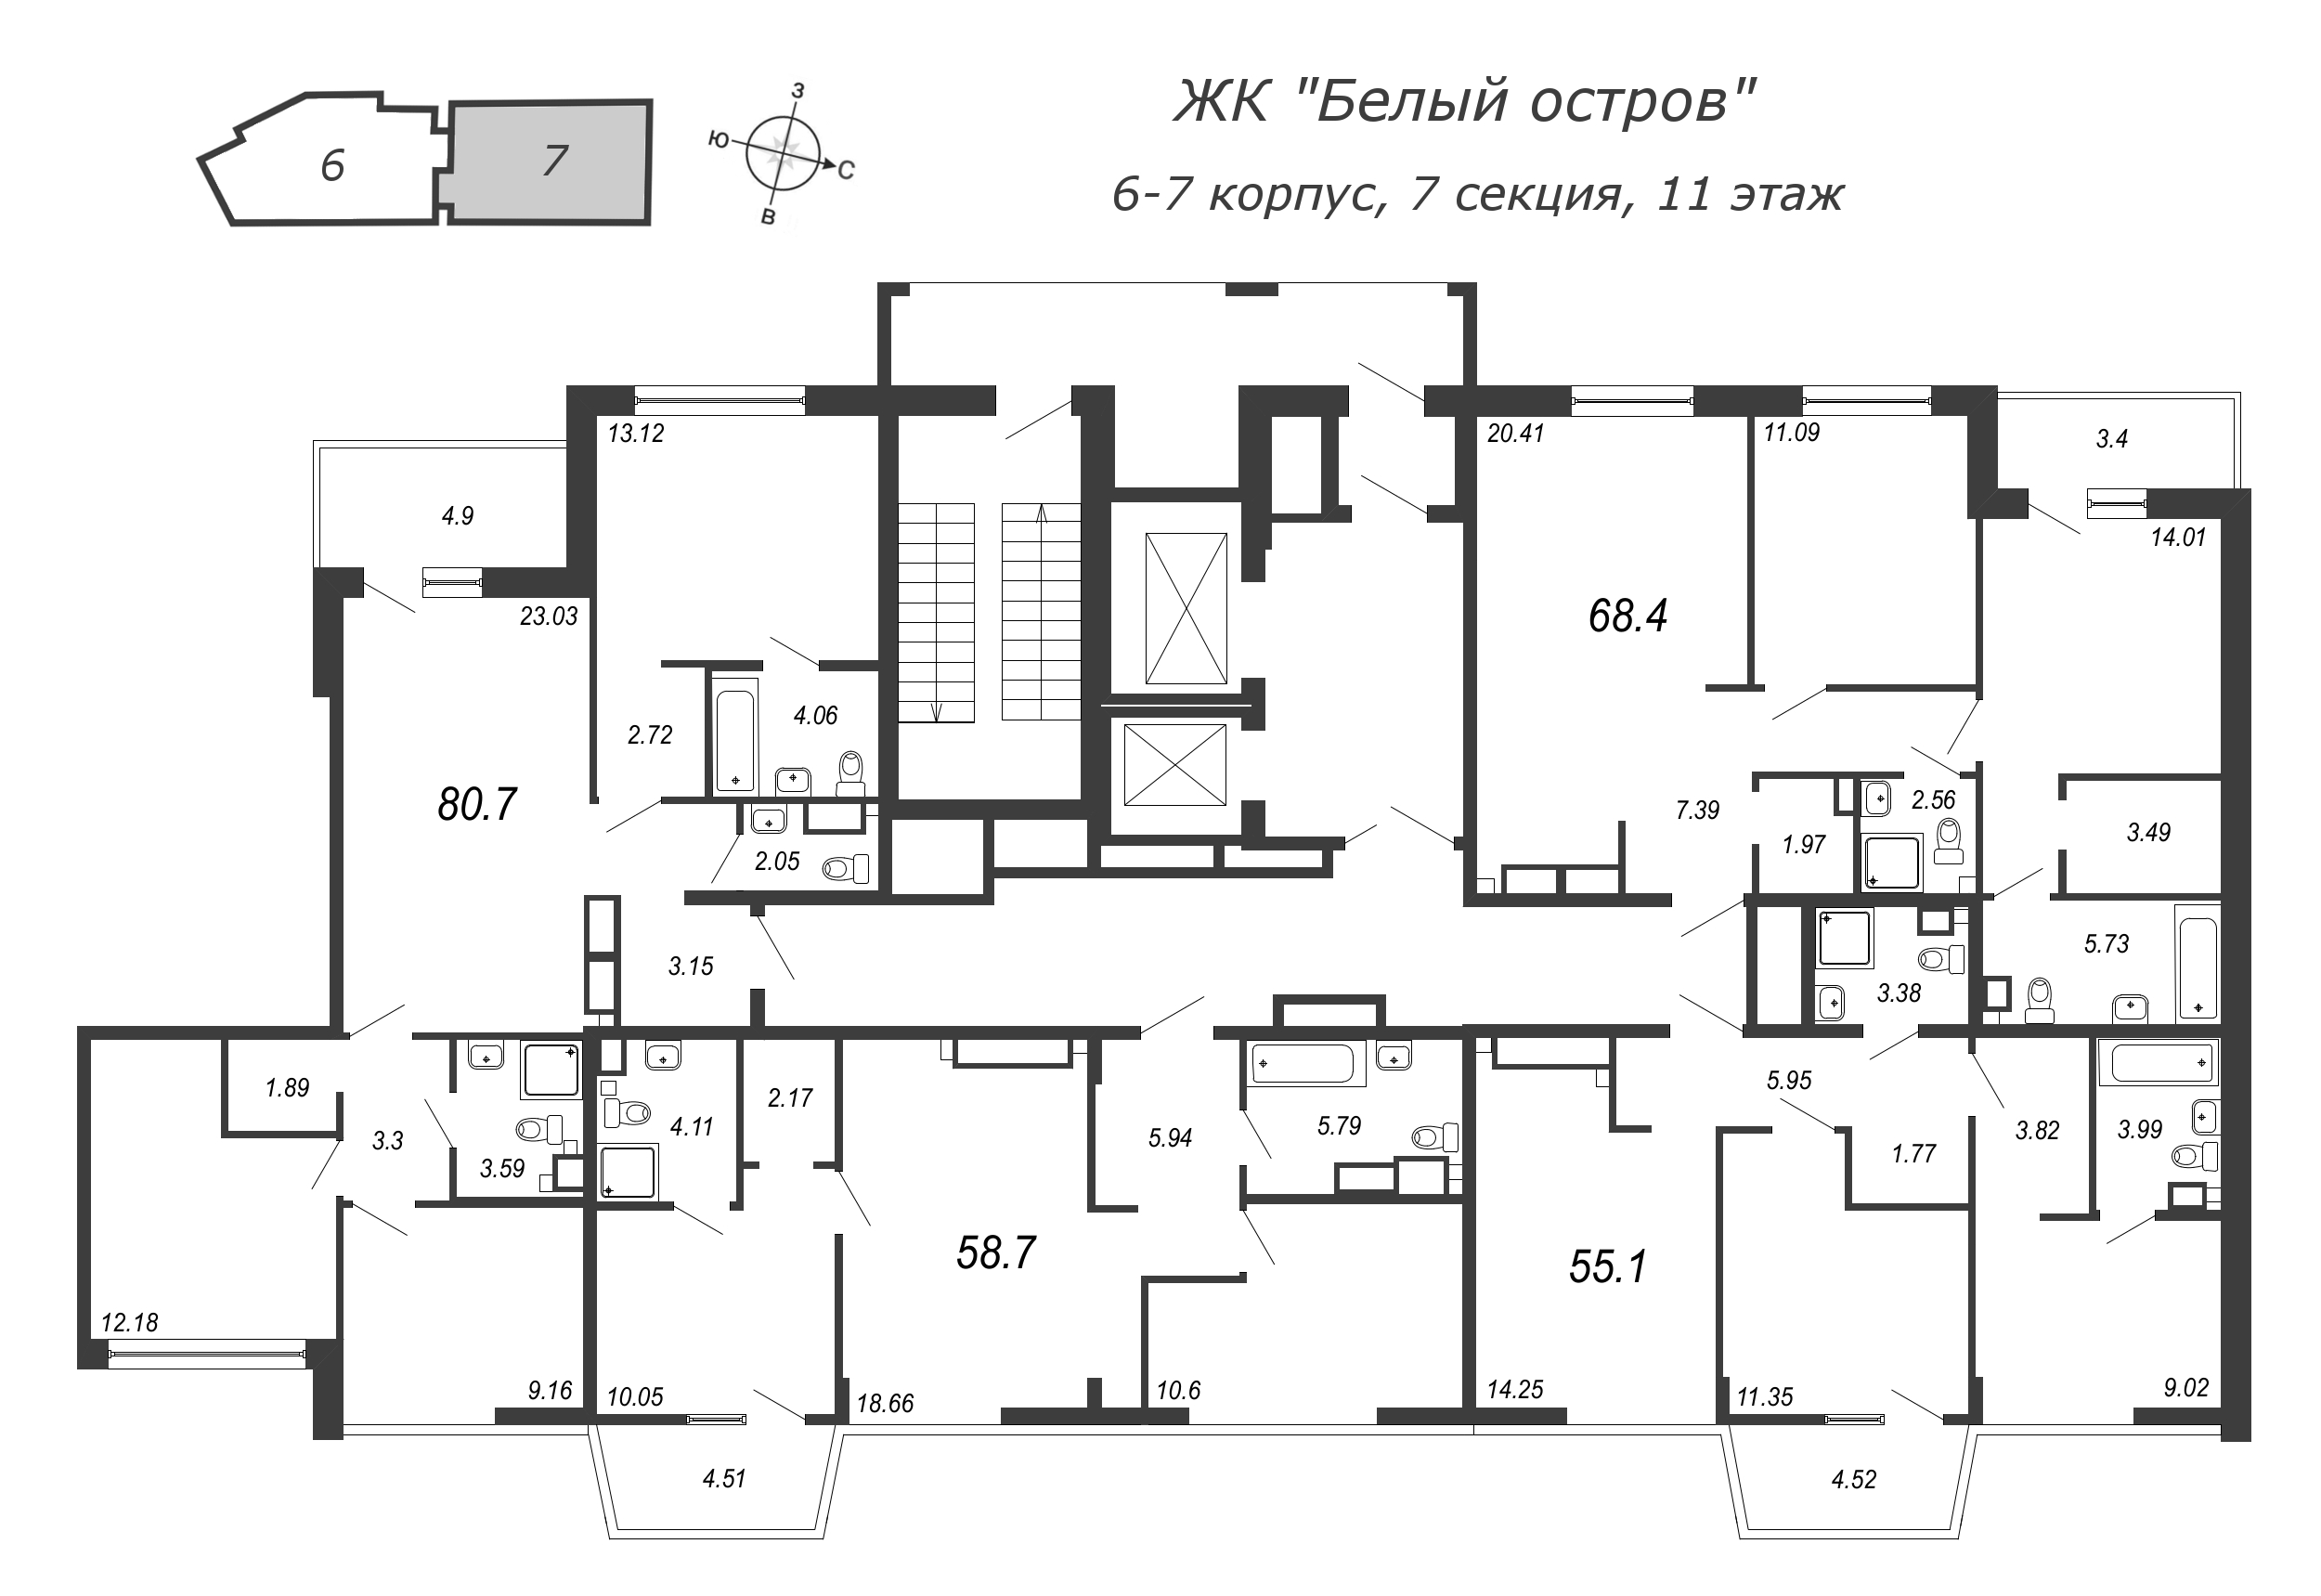 4-комнатная (Евро) квартира, 83.2 м² в ЖК "Белый остров" - планировка этажа